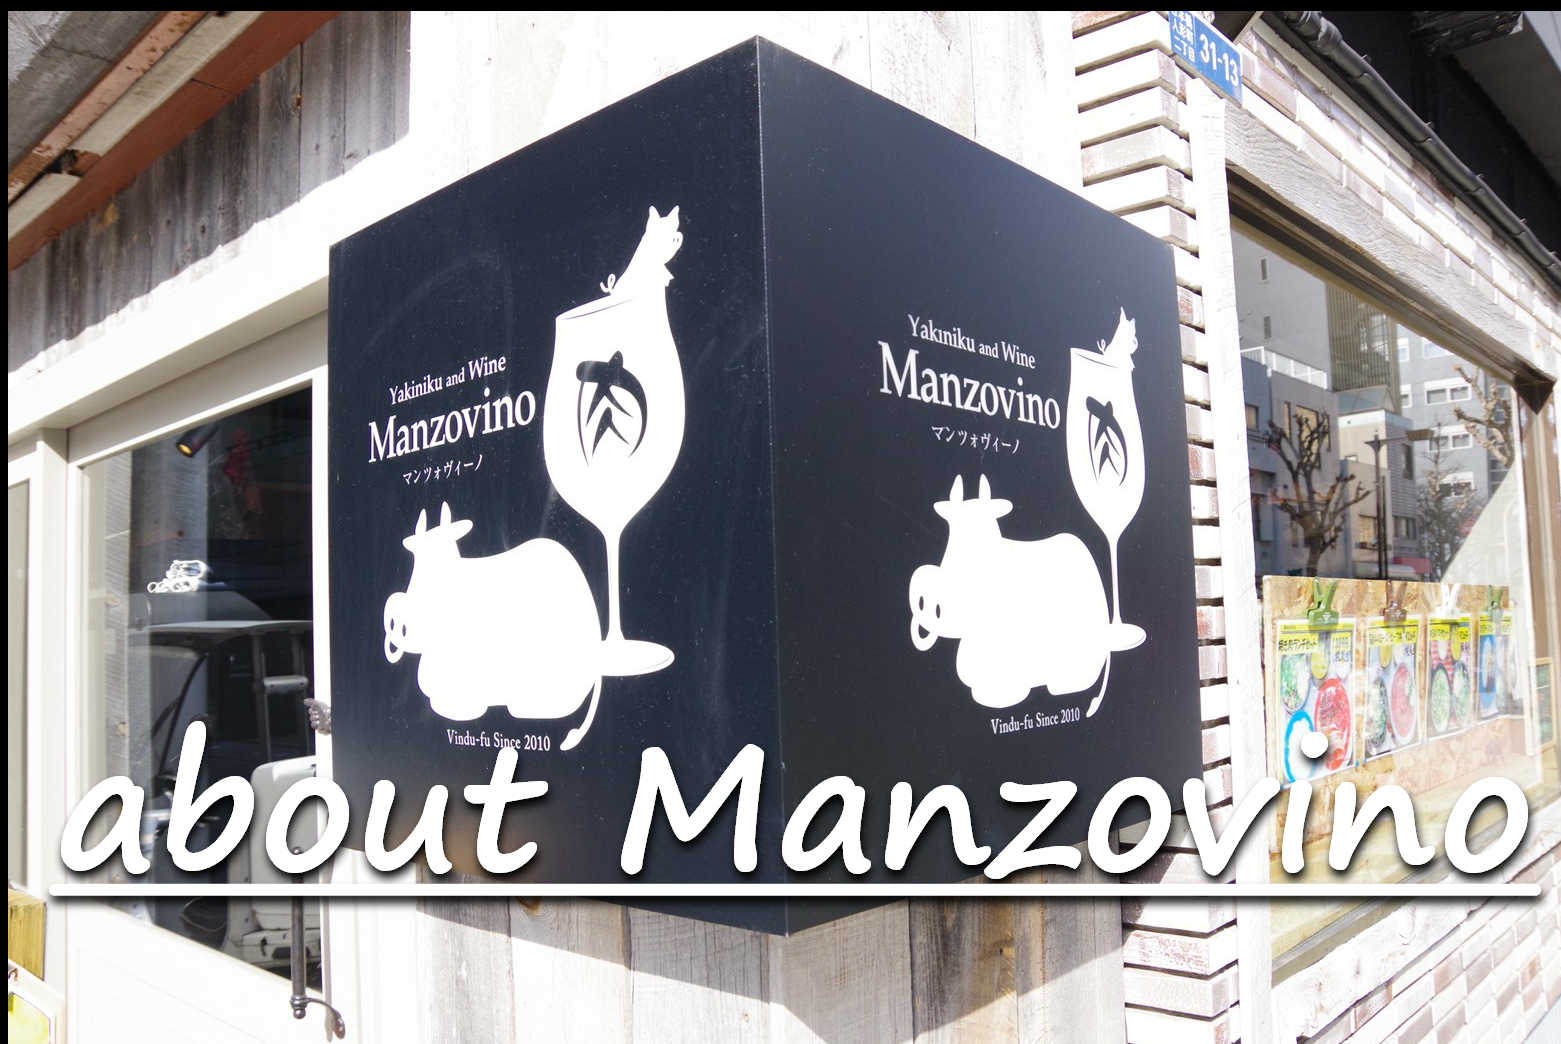 about Manzovino